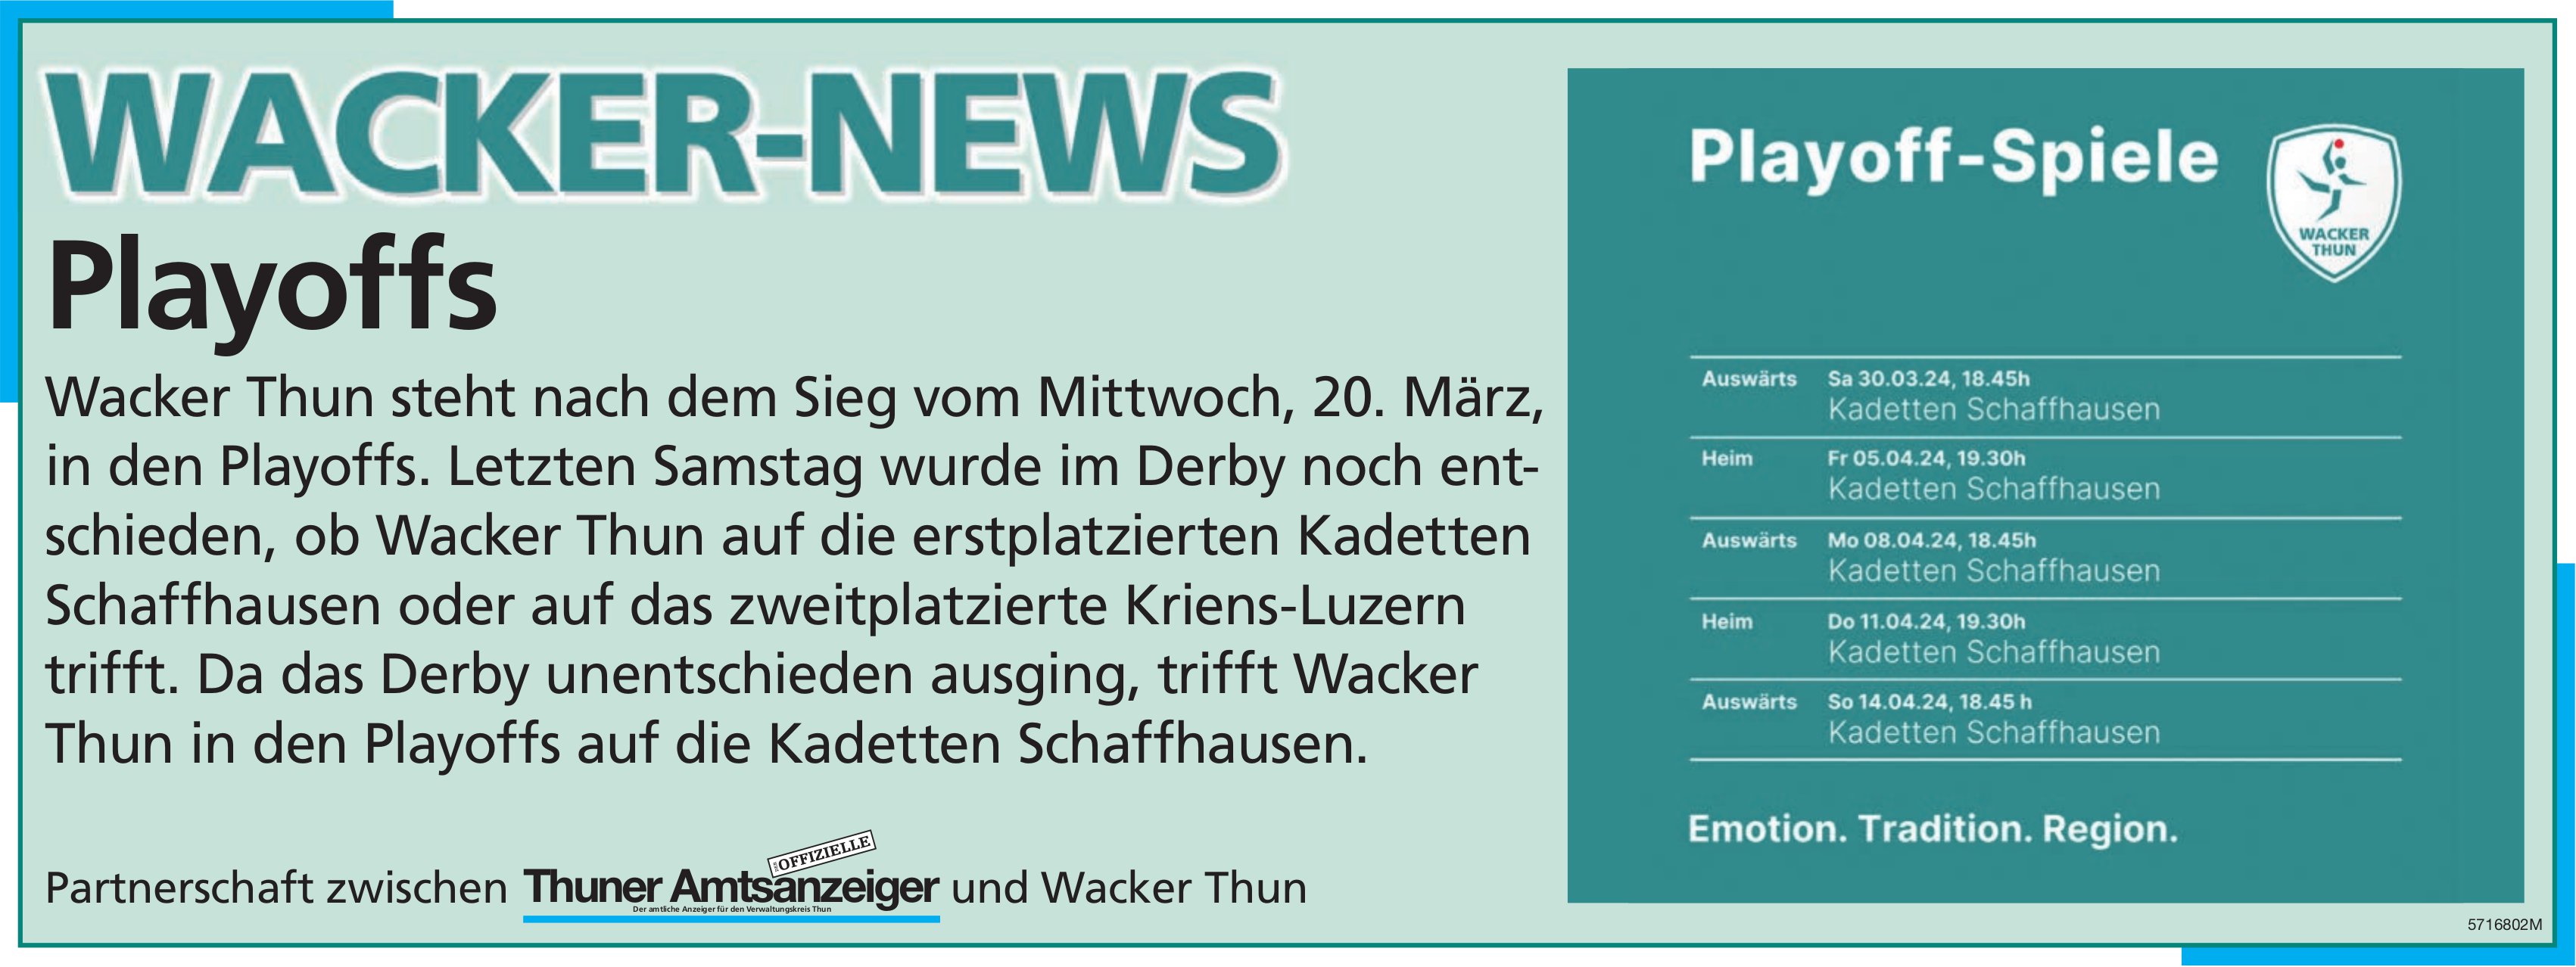 Thuner Amtsanzeiger / Wacker Thun, Wacker-News: Playoffs